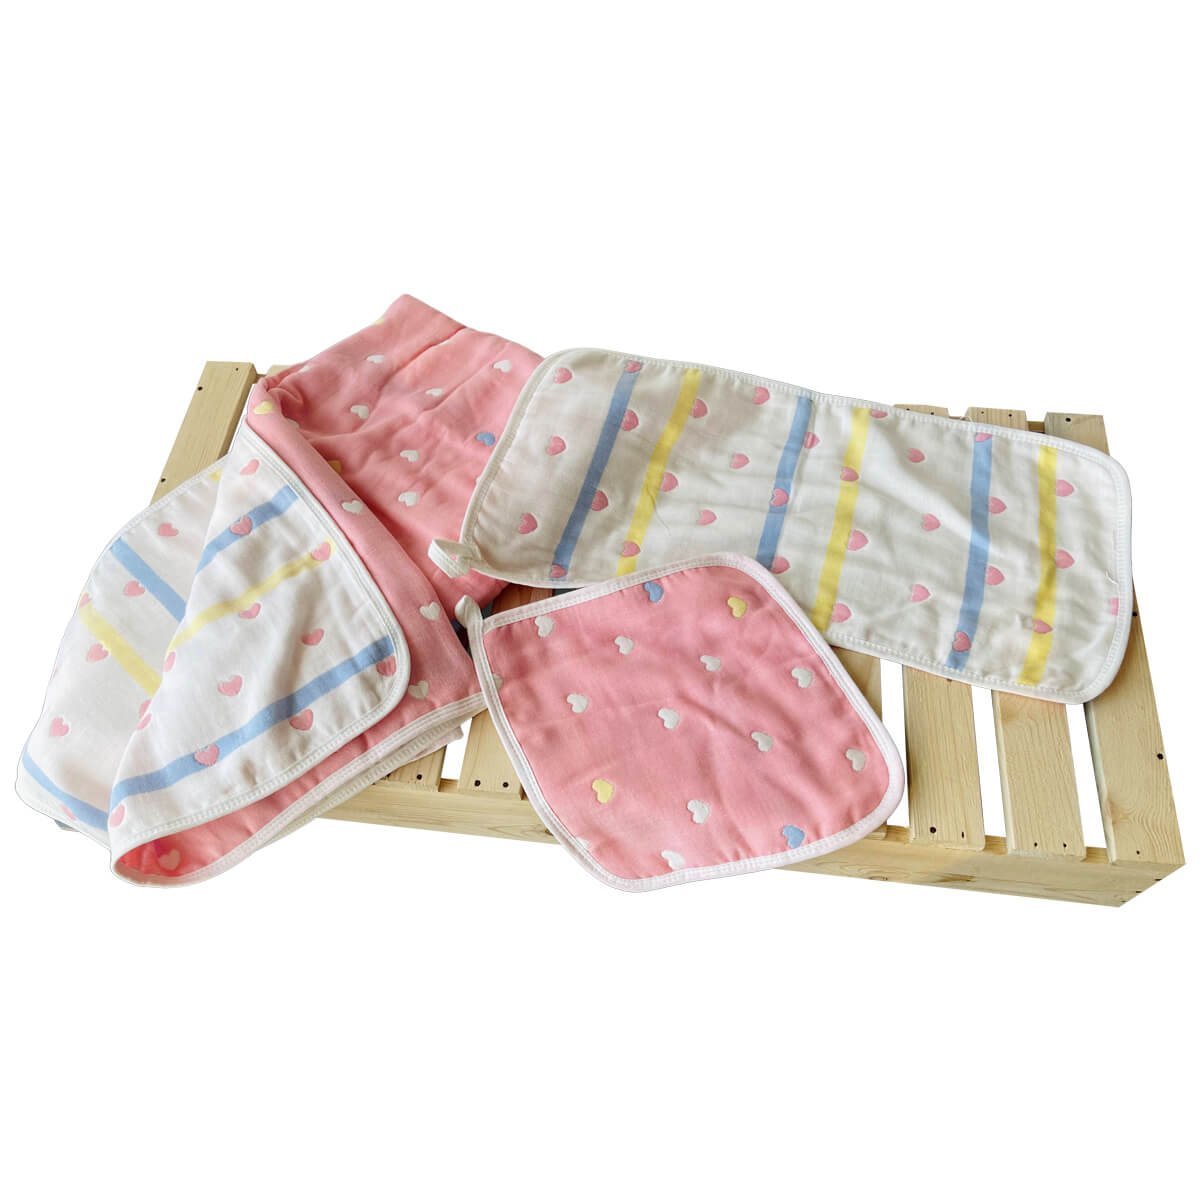 Mini Hearts (Pink) 3 pcs Combo of Muslin Blanket, Square Napkin and Burp Napkin Set - Little Surprise BoxMini Hearts (Pink) 3 pcs Combo of Muslin Blanket, Square Napkin and Burp Napkin Set